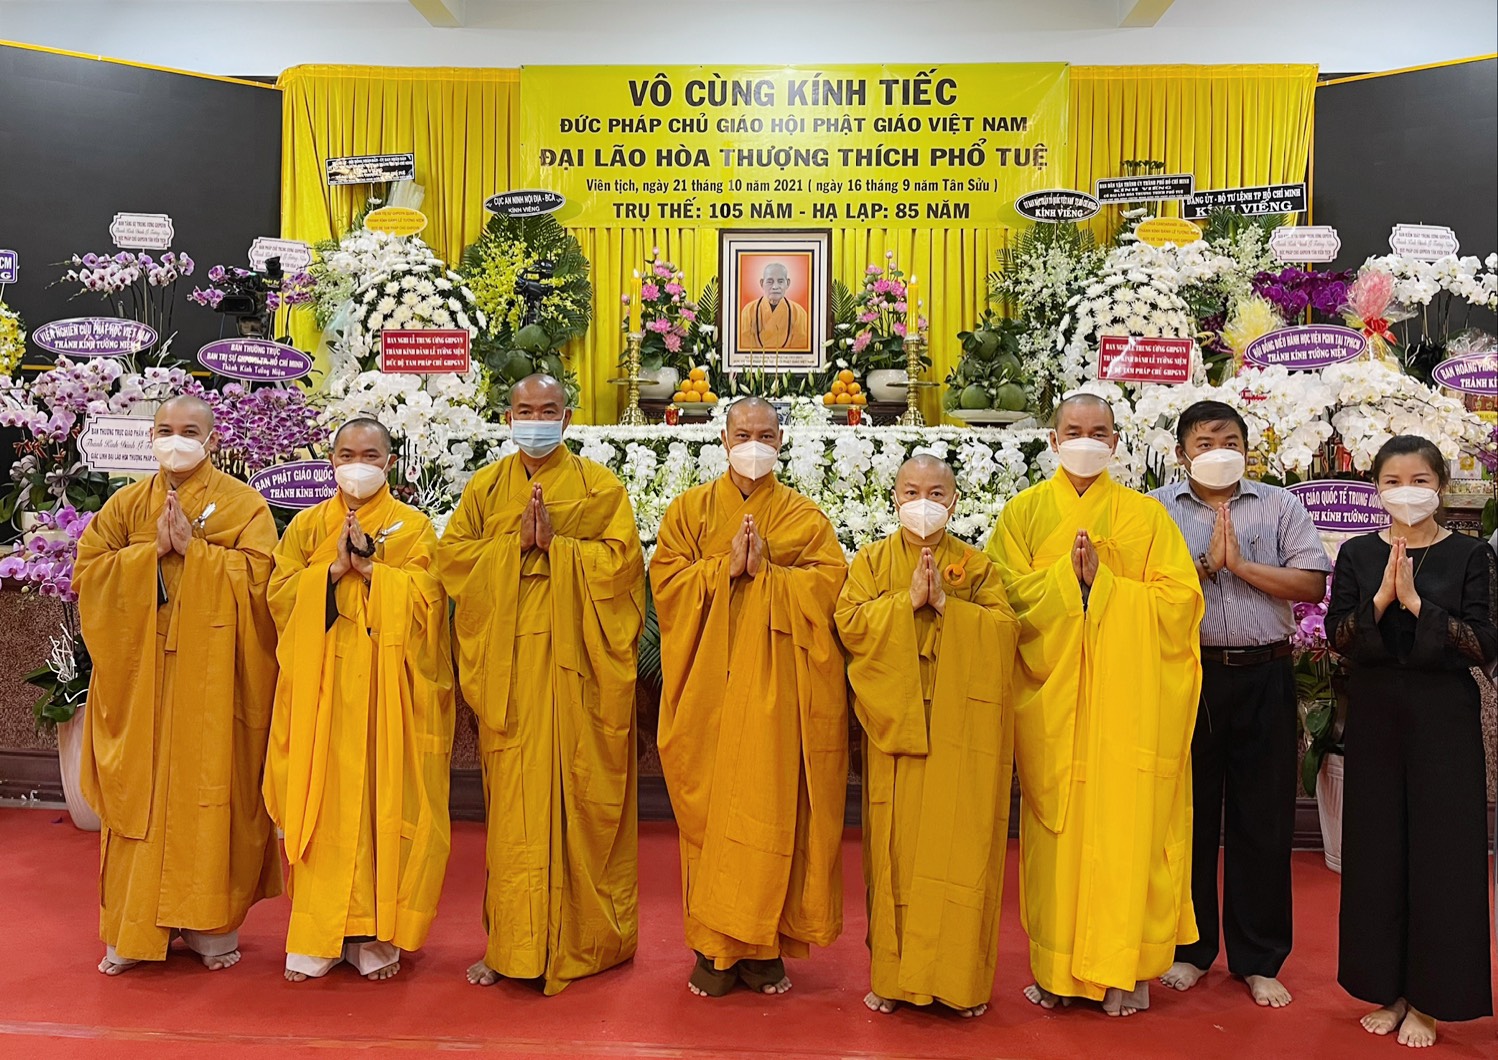 TP.HCM: Phái đoàn Ban Hướng dẫn Phật tử TƯ, Ban Hoằng Pháp TƯ, Ban Từ thiện TƯ viếng vọng tang Đức Pháp chủ GHPGVN